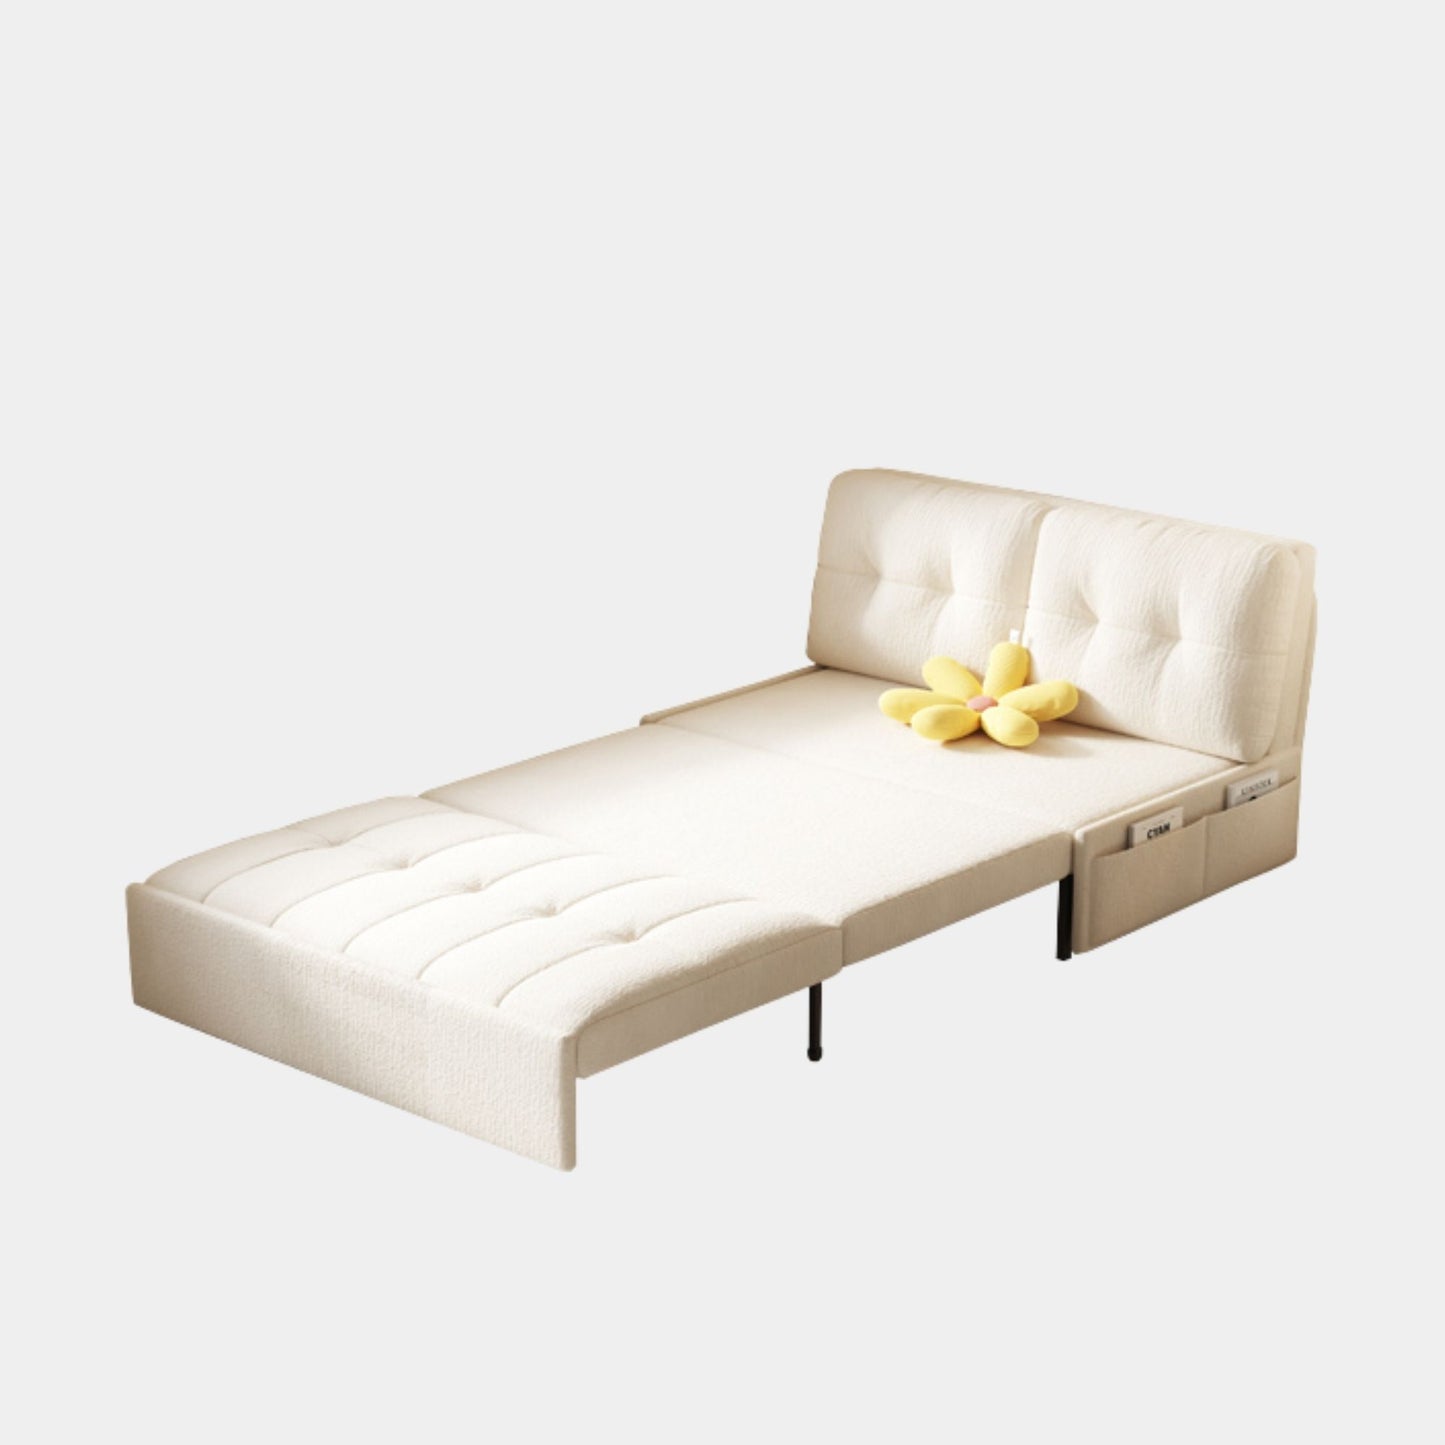 Ciabatta fabric sofa bed large white